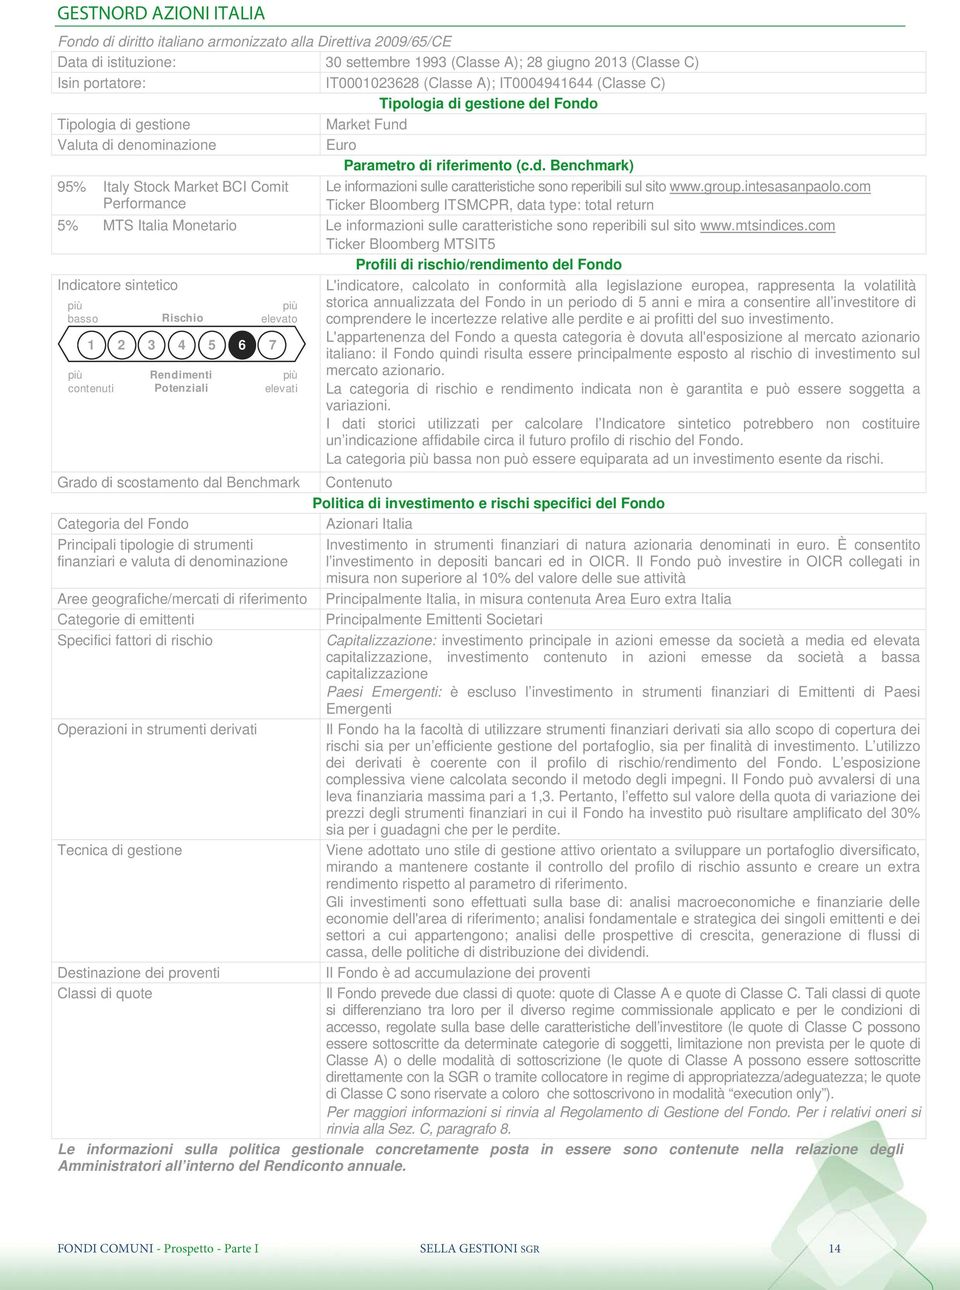 group.intesasanpaolo.com Ticker Bloomberg ITSMCPR, data type: total return 5% MTS Italia Monetario Le informazioni sulle caratteristiche sono reperibili sul sito www.mtsindices.